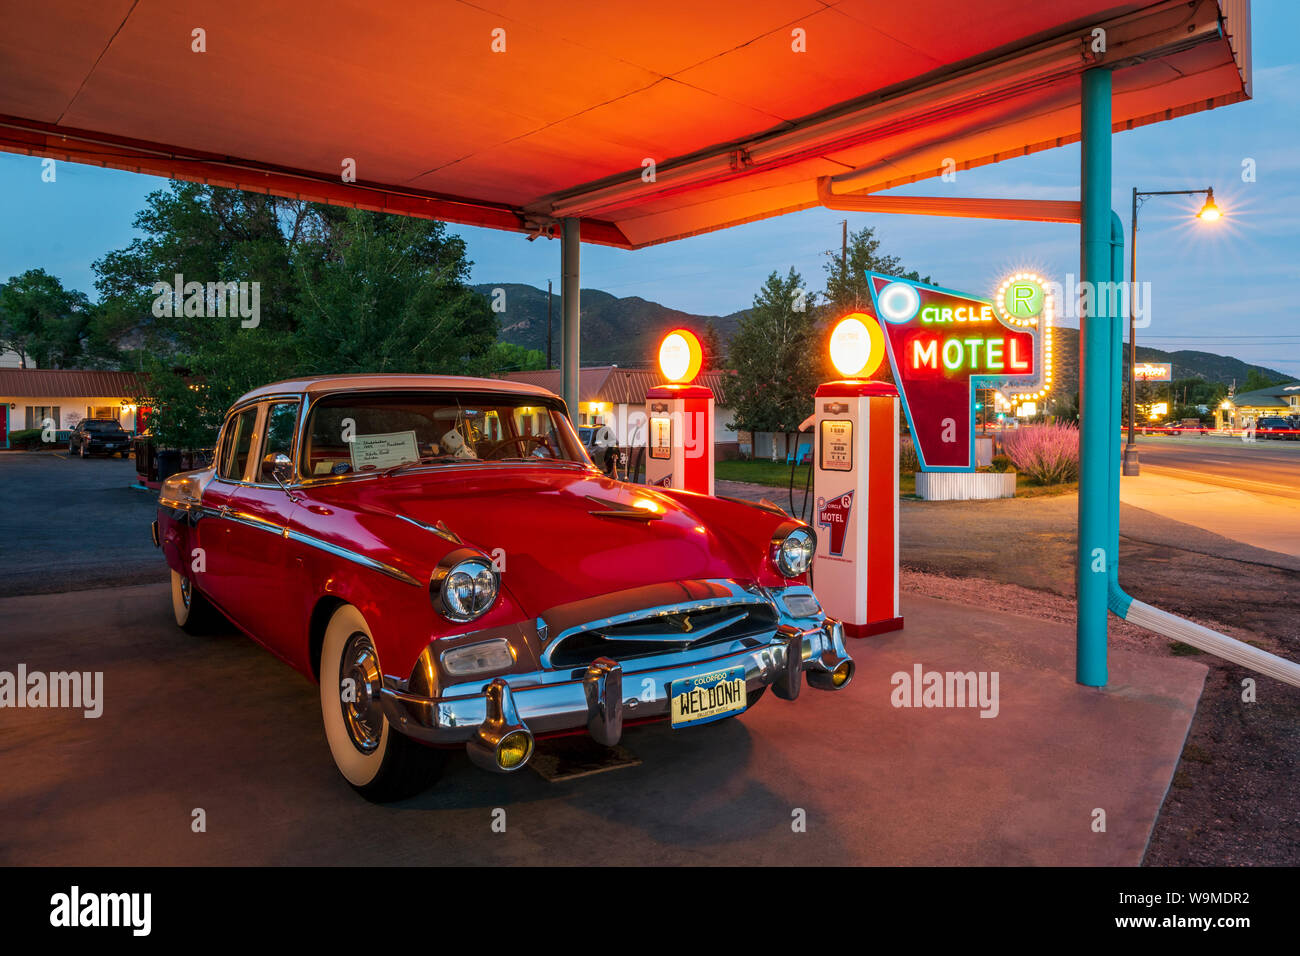 Vista del tramonto di 1955 Studebaker Presidente classico auto parcheggiata di fronte antichi pompe per gas convertito in elettrico auto caricabatterie; il cerchio R Motel; Salida Foto Stock